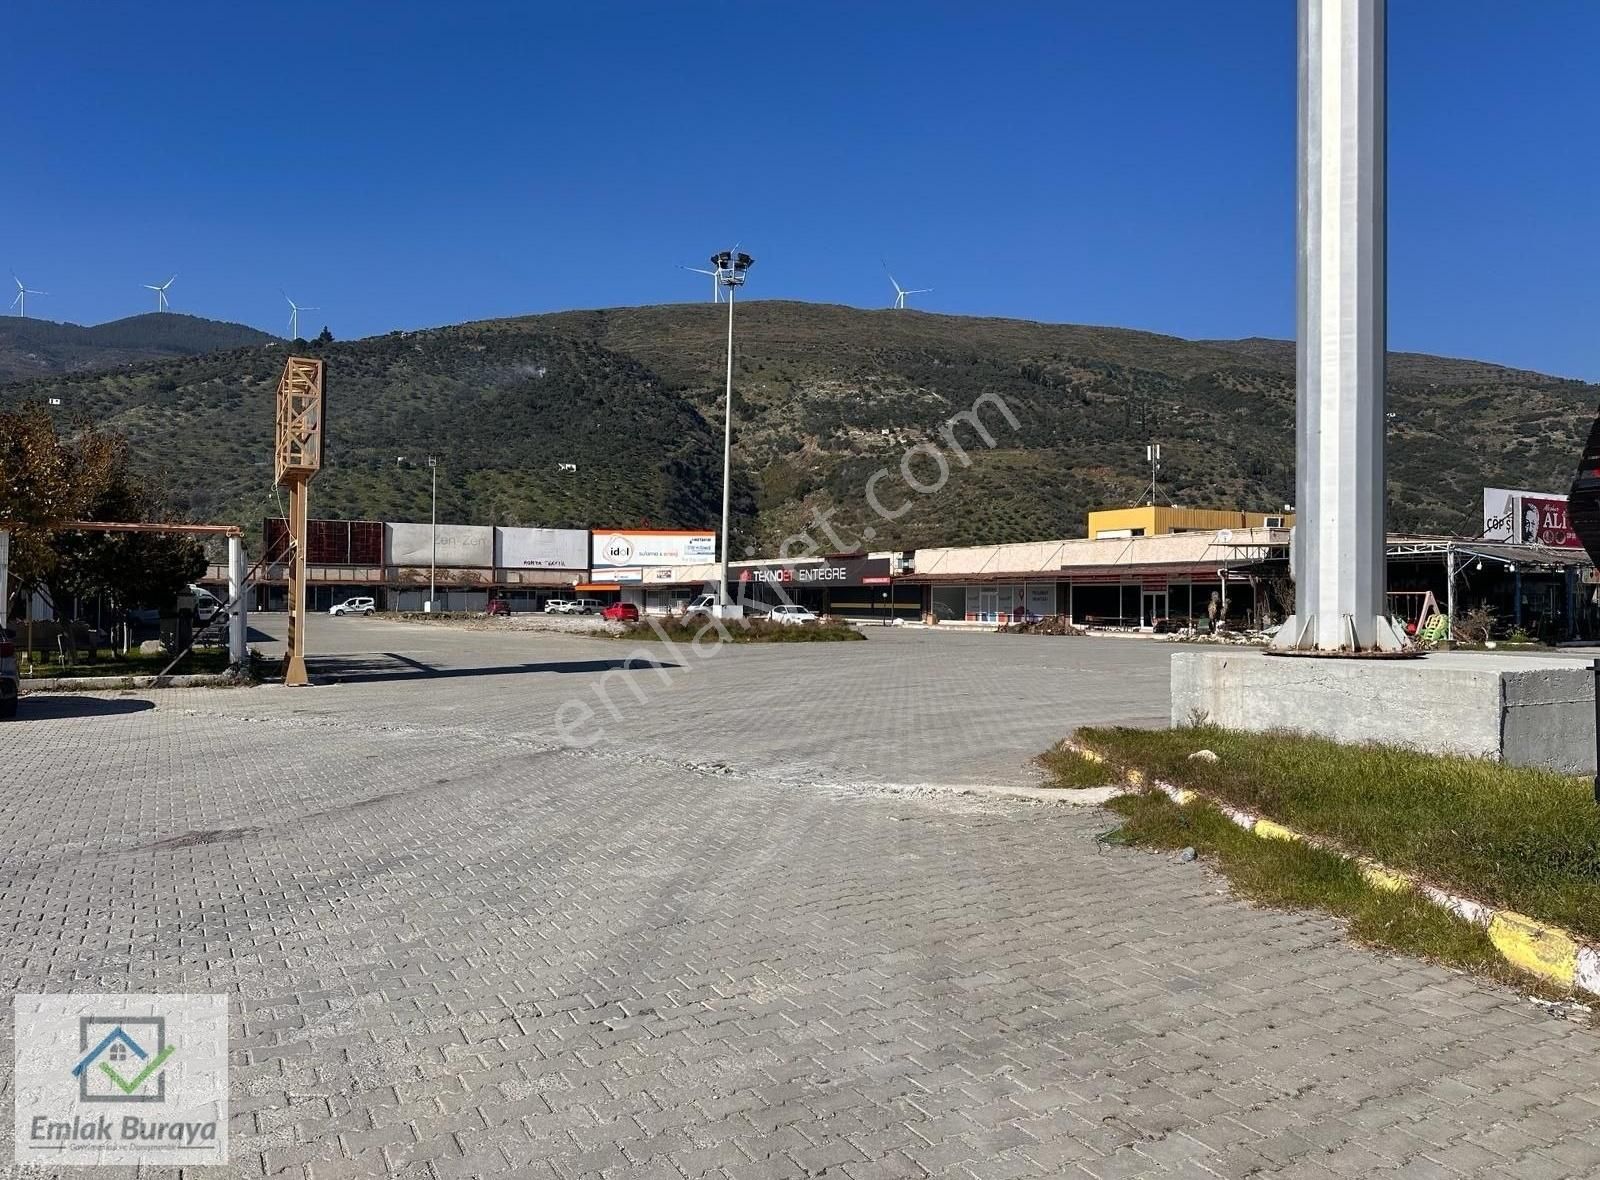 Söke Yenidoğan Satılık Dükkan & Mağaza Emlak Buraya'dan Söke-Bodrum Karayolu Ege2 Outlet Satılık Dükkan